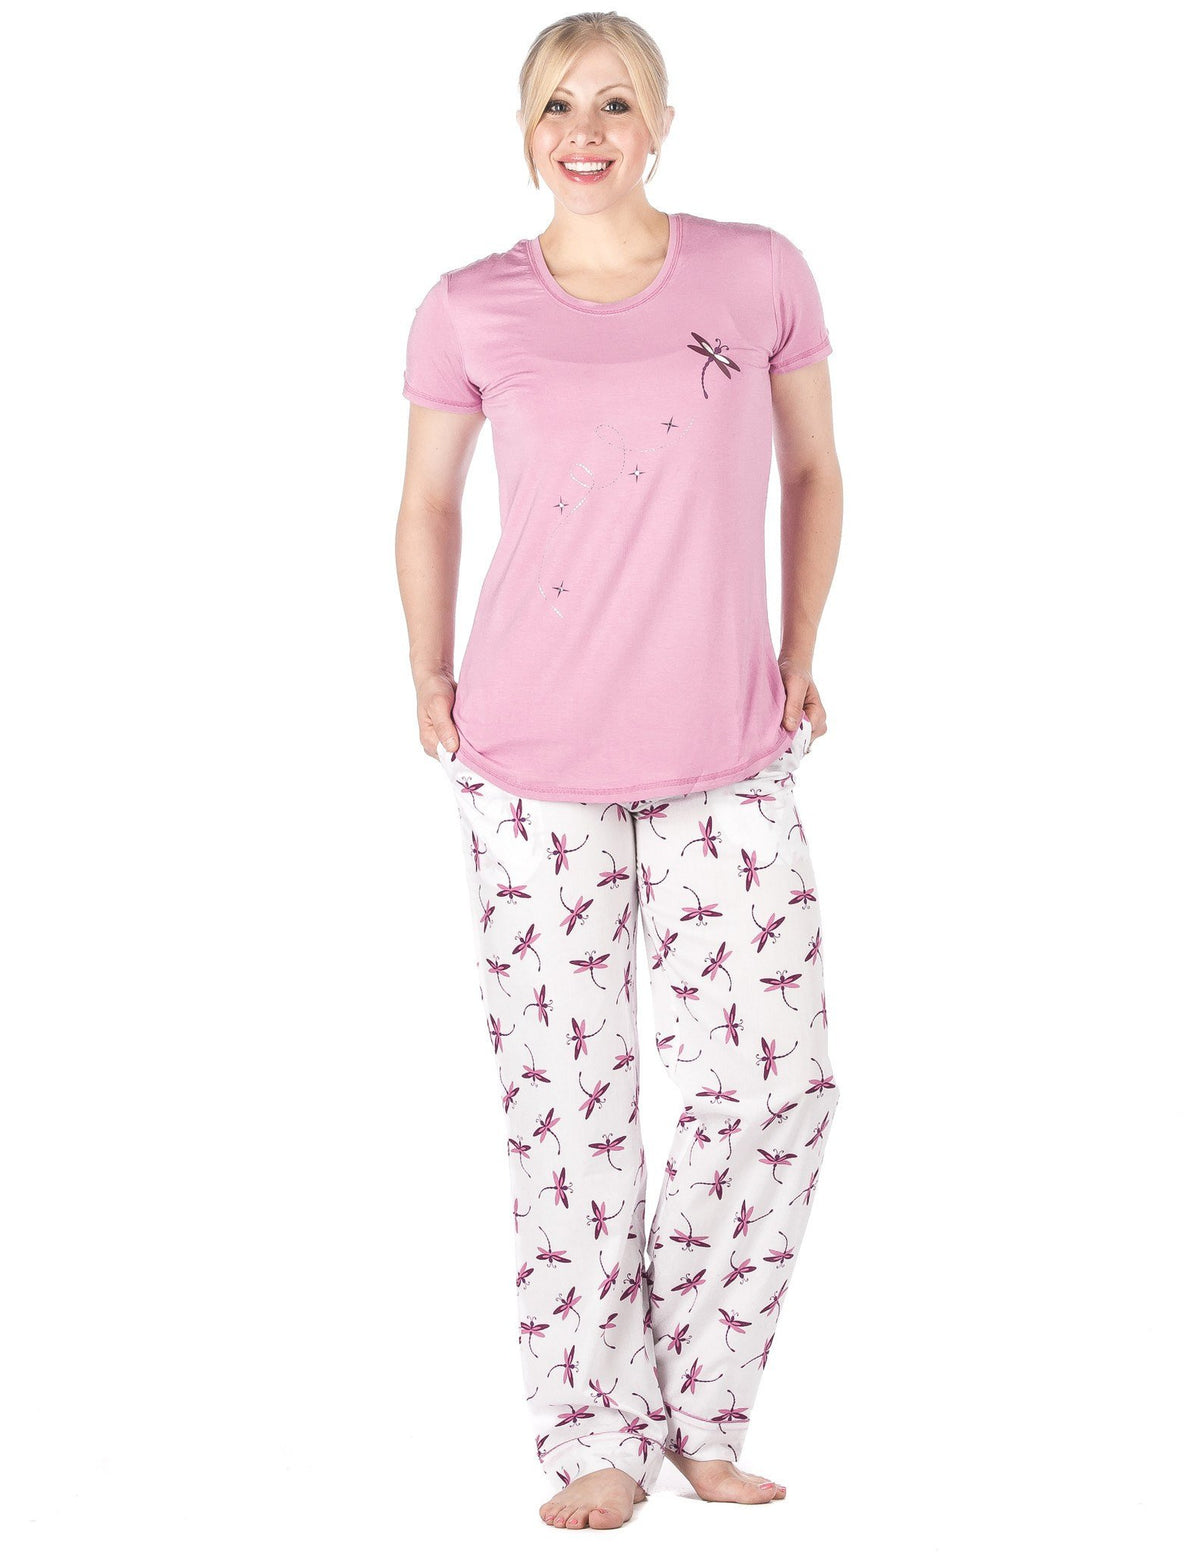 Women's Premium Cotton Poplin Lounge/Sleepwear Set - Firefly - White/Purple